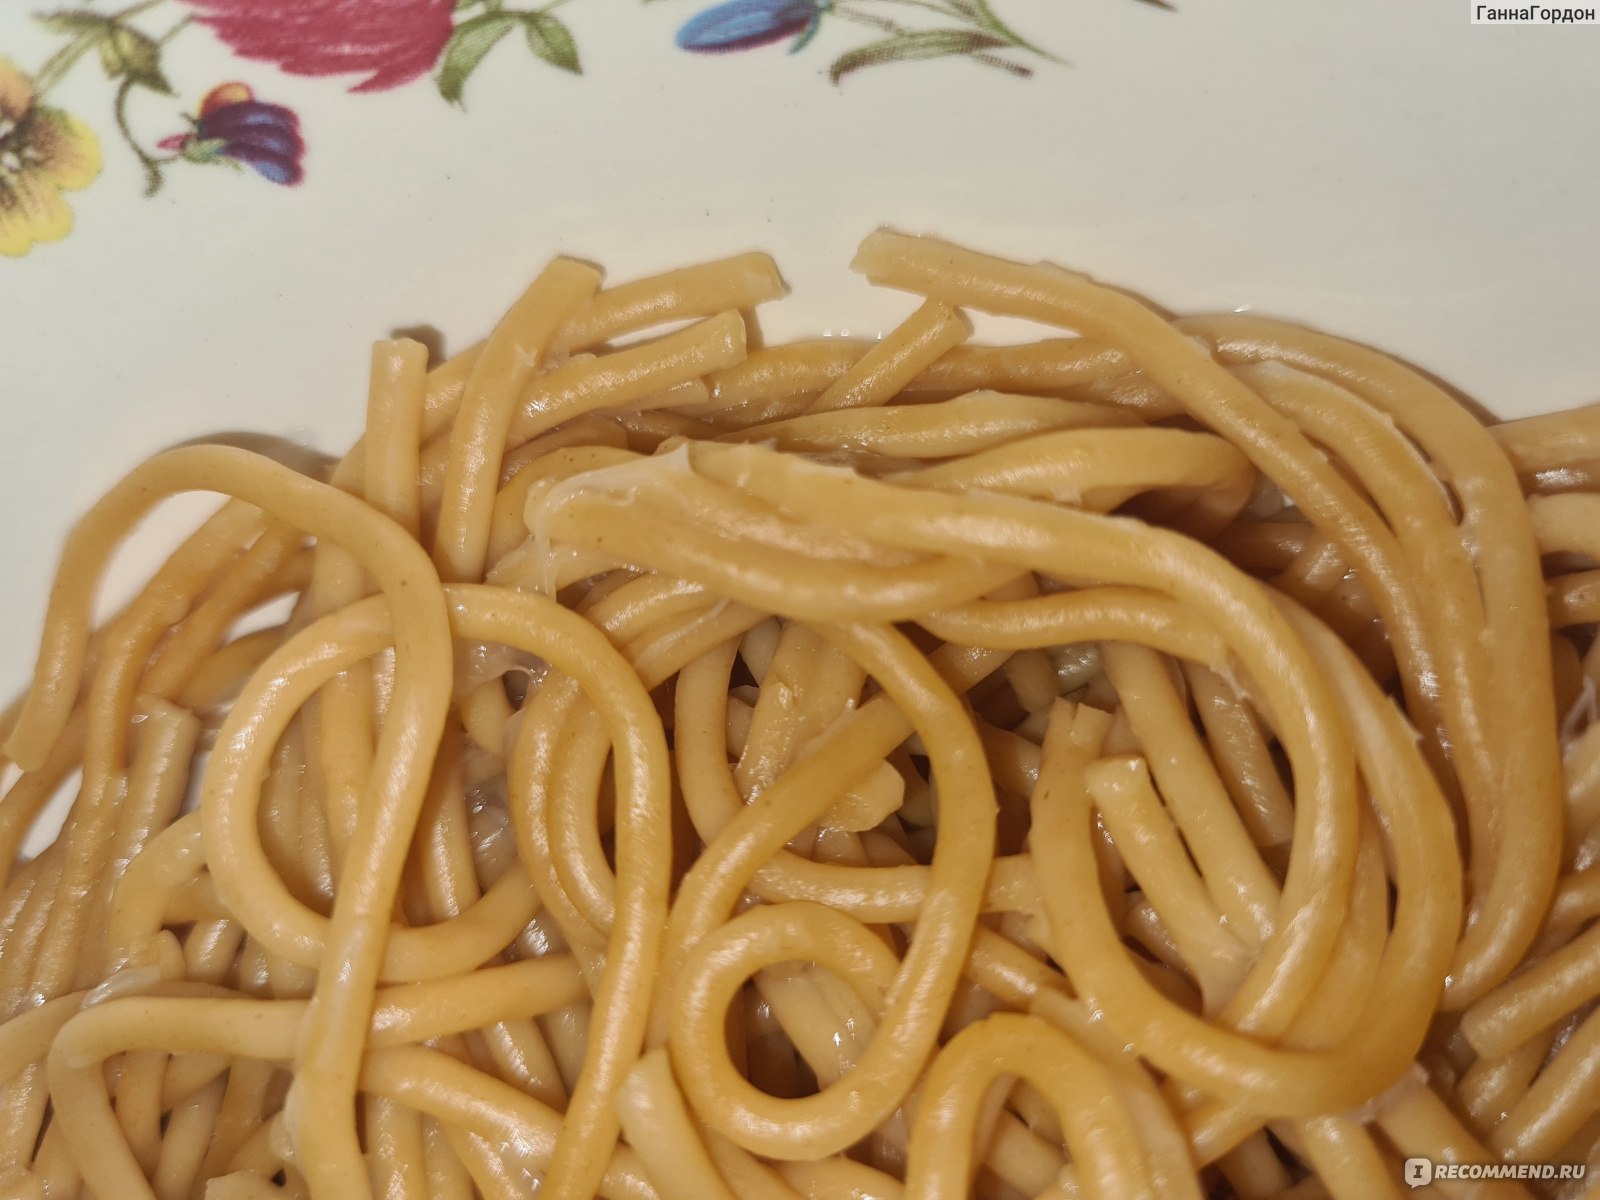 Макаронные изделия Макфа Томатные спагетти фото